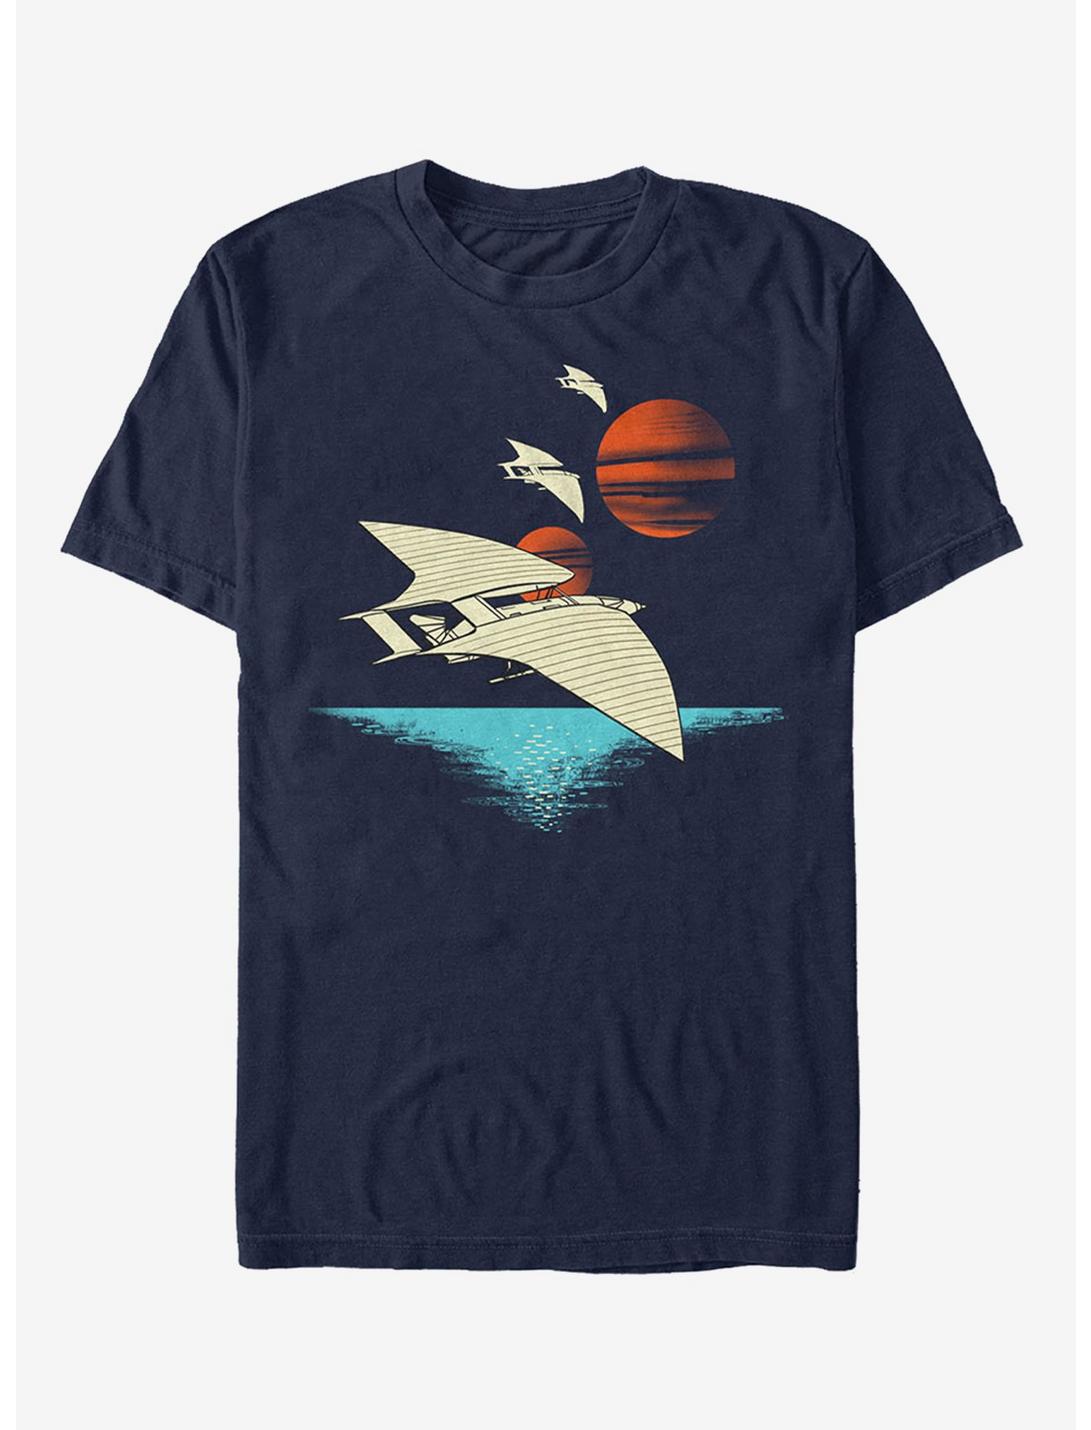 Star Wars Spacecraft Scene T-Shirt, NAVY, hi-res